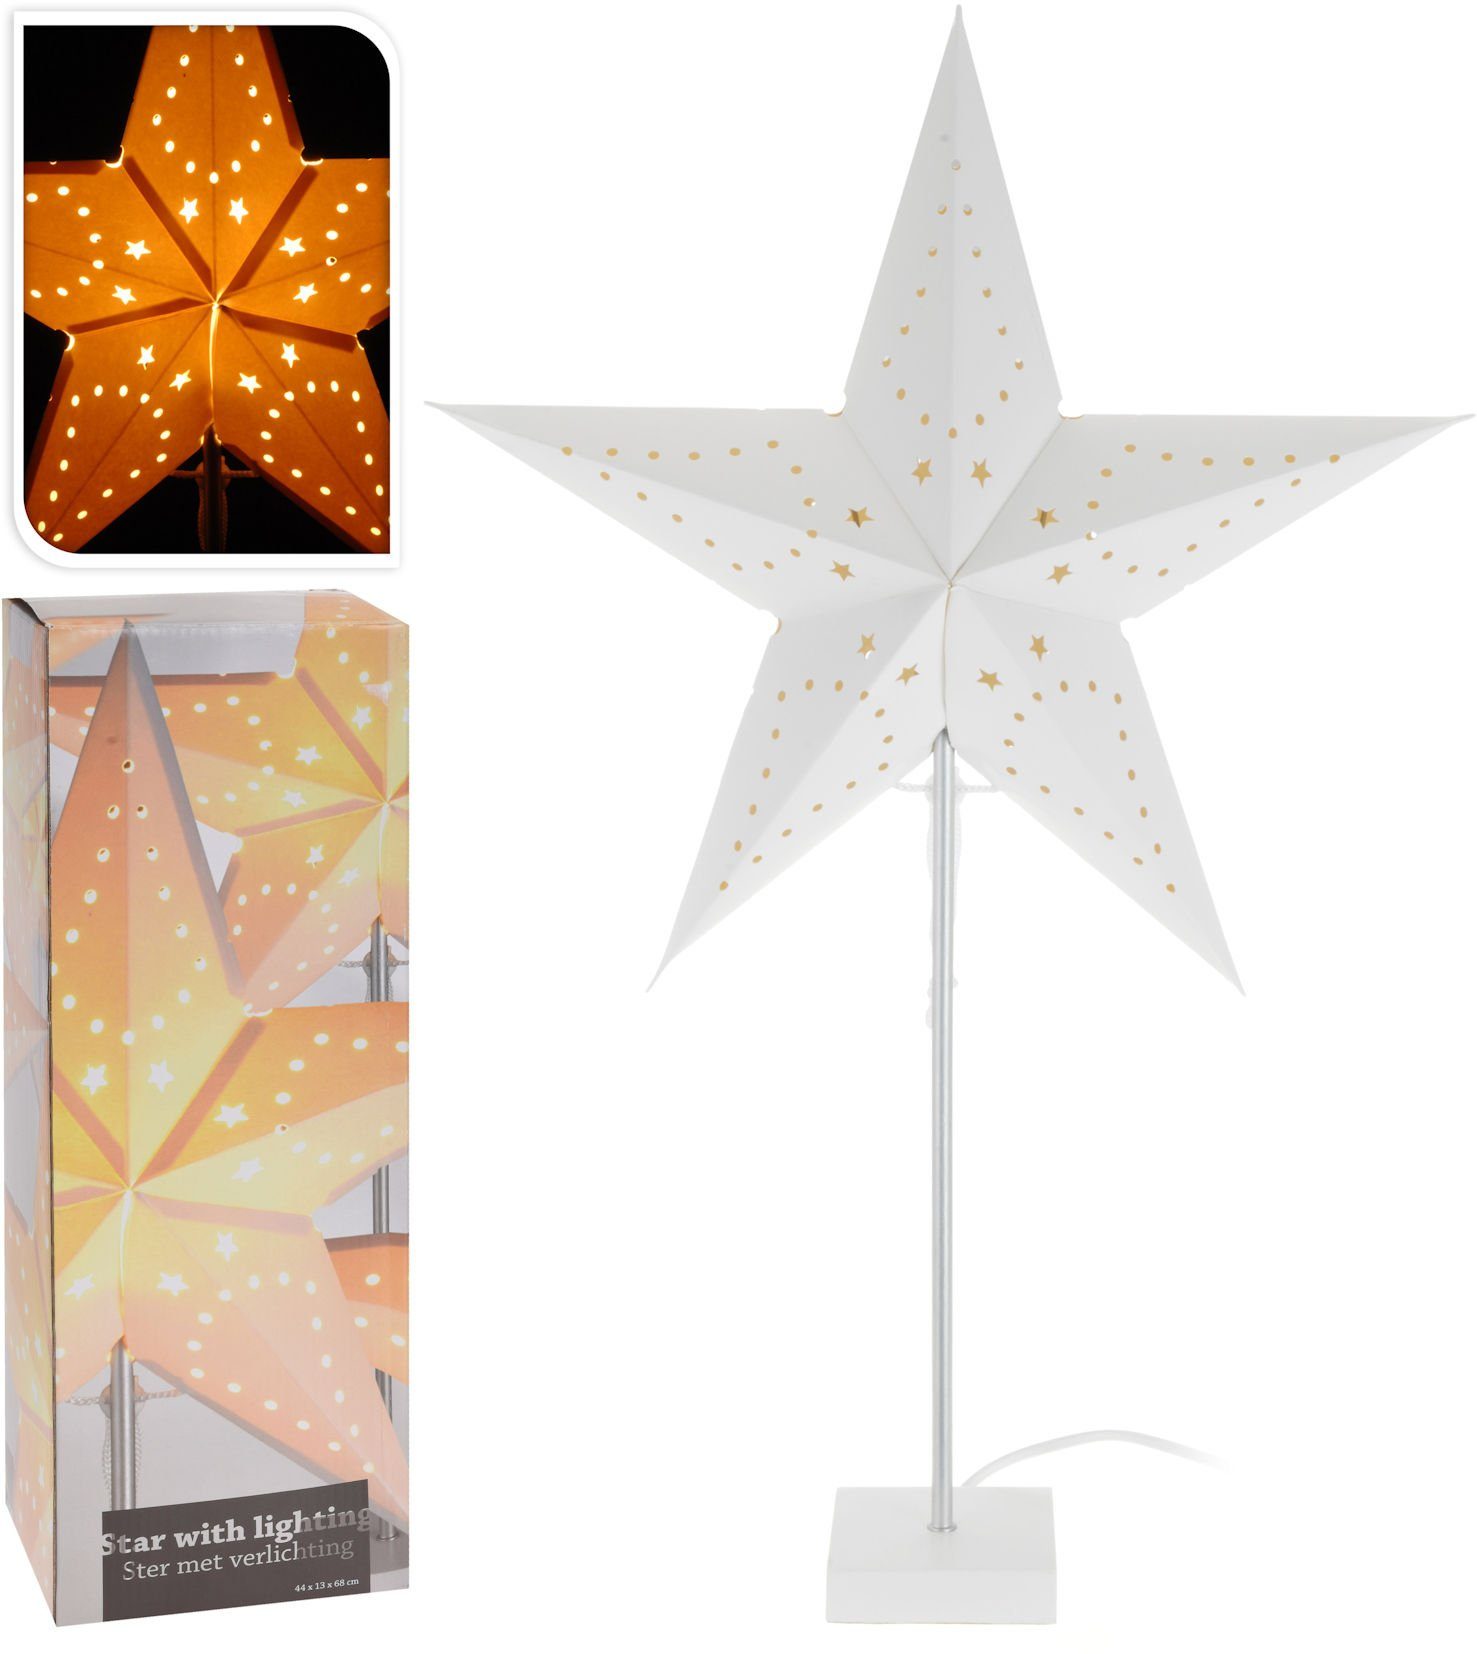 Spetebo LED Stern Sternenlampe 44x13x68 cm - Star with lighting -, An / Aus, ohne Leuchtmittel, warmweiß, Stern Tischlampe mit Papier Лампыschirm - Weihnachten Advent Winter